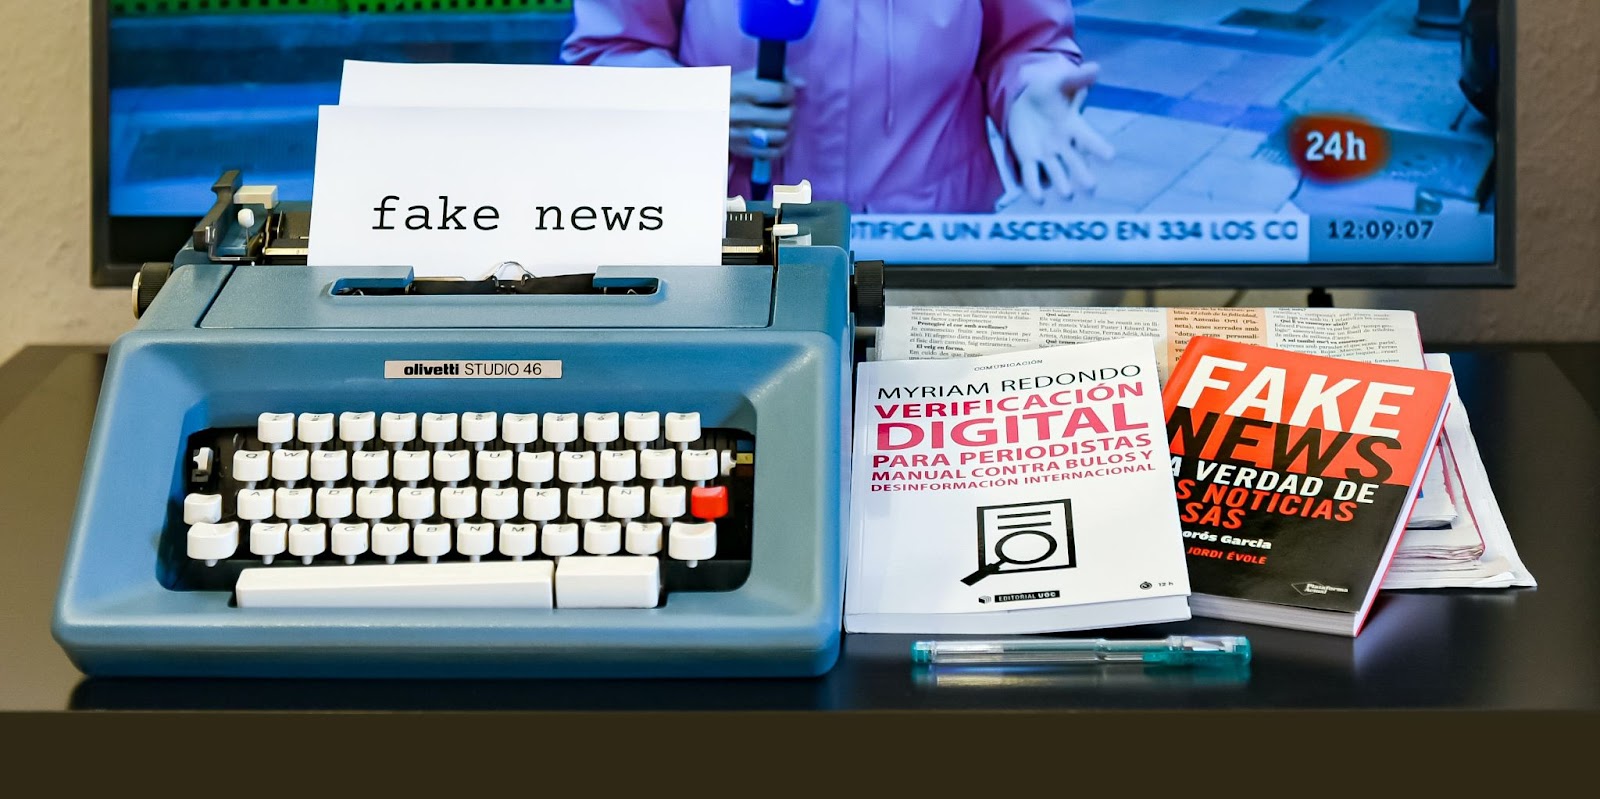 Image of typewriter with 'Fake News' written